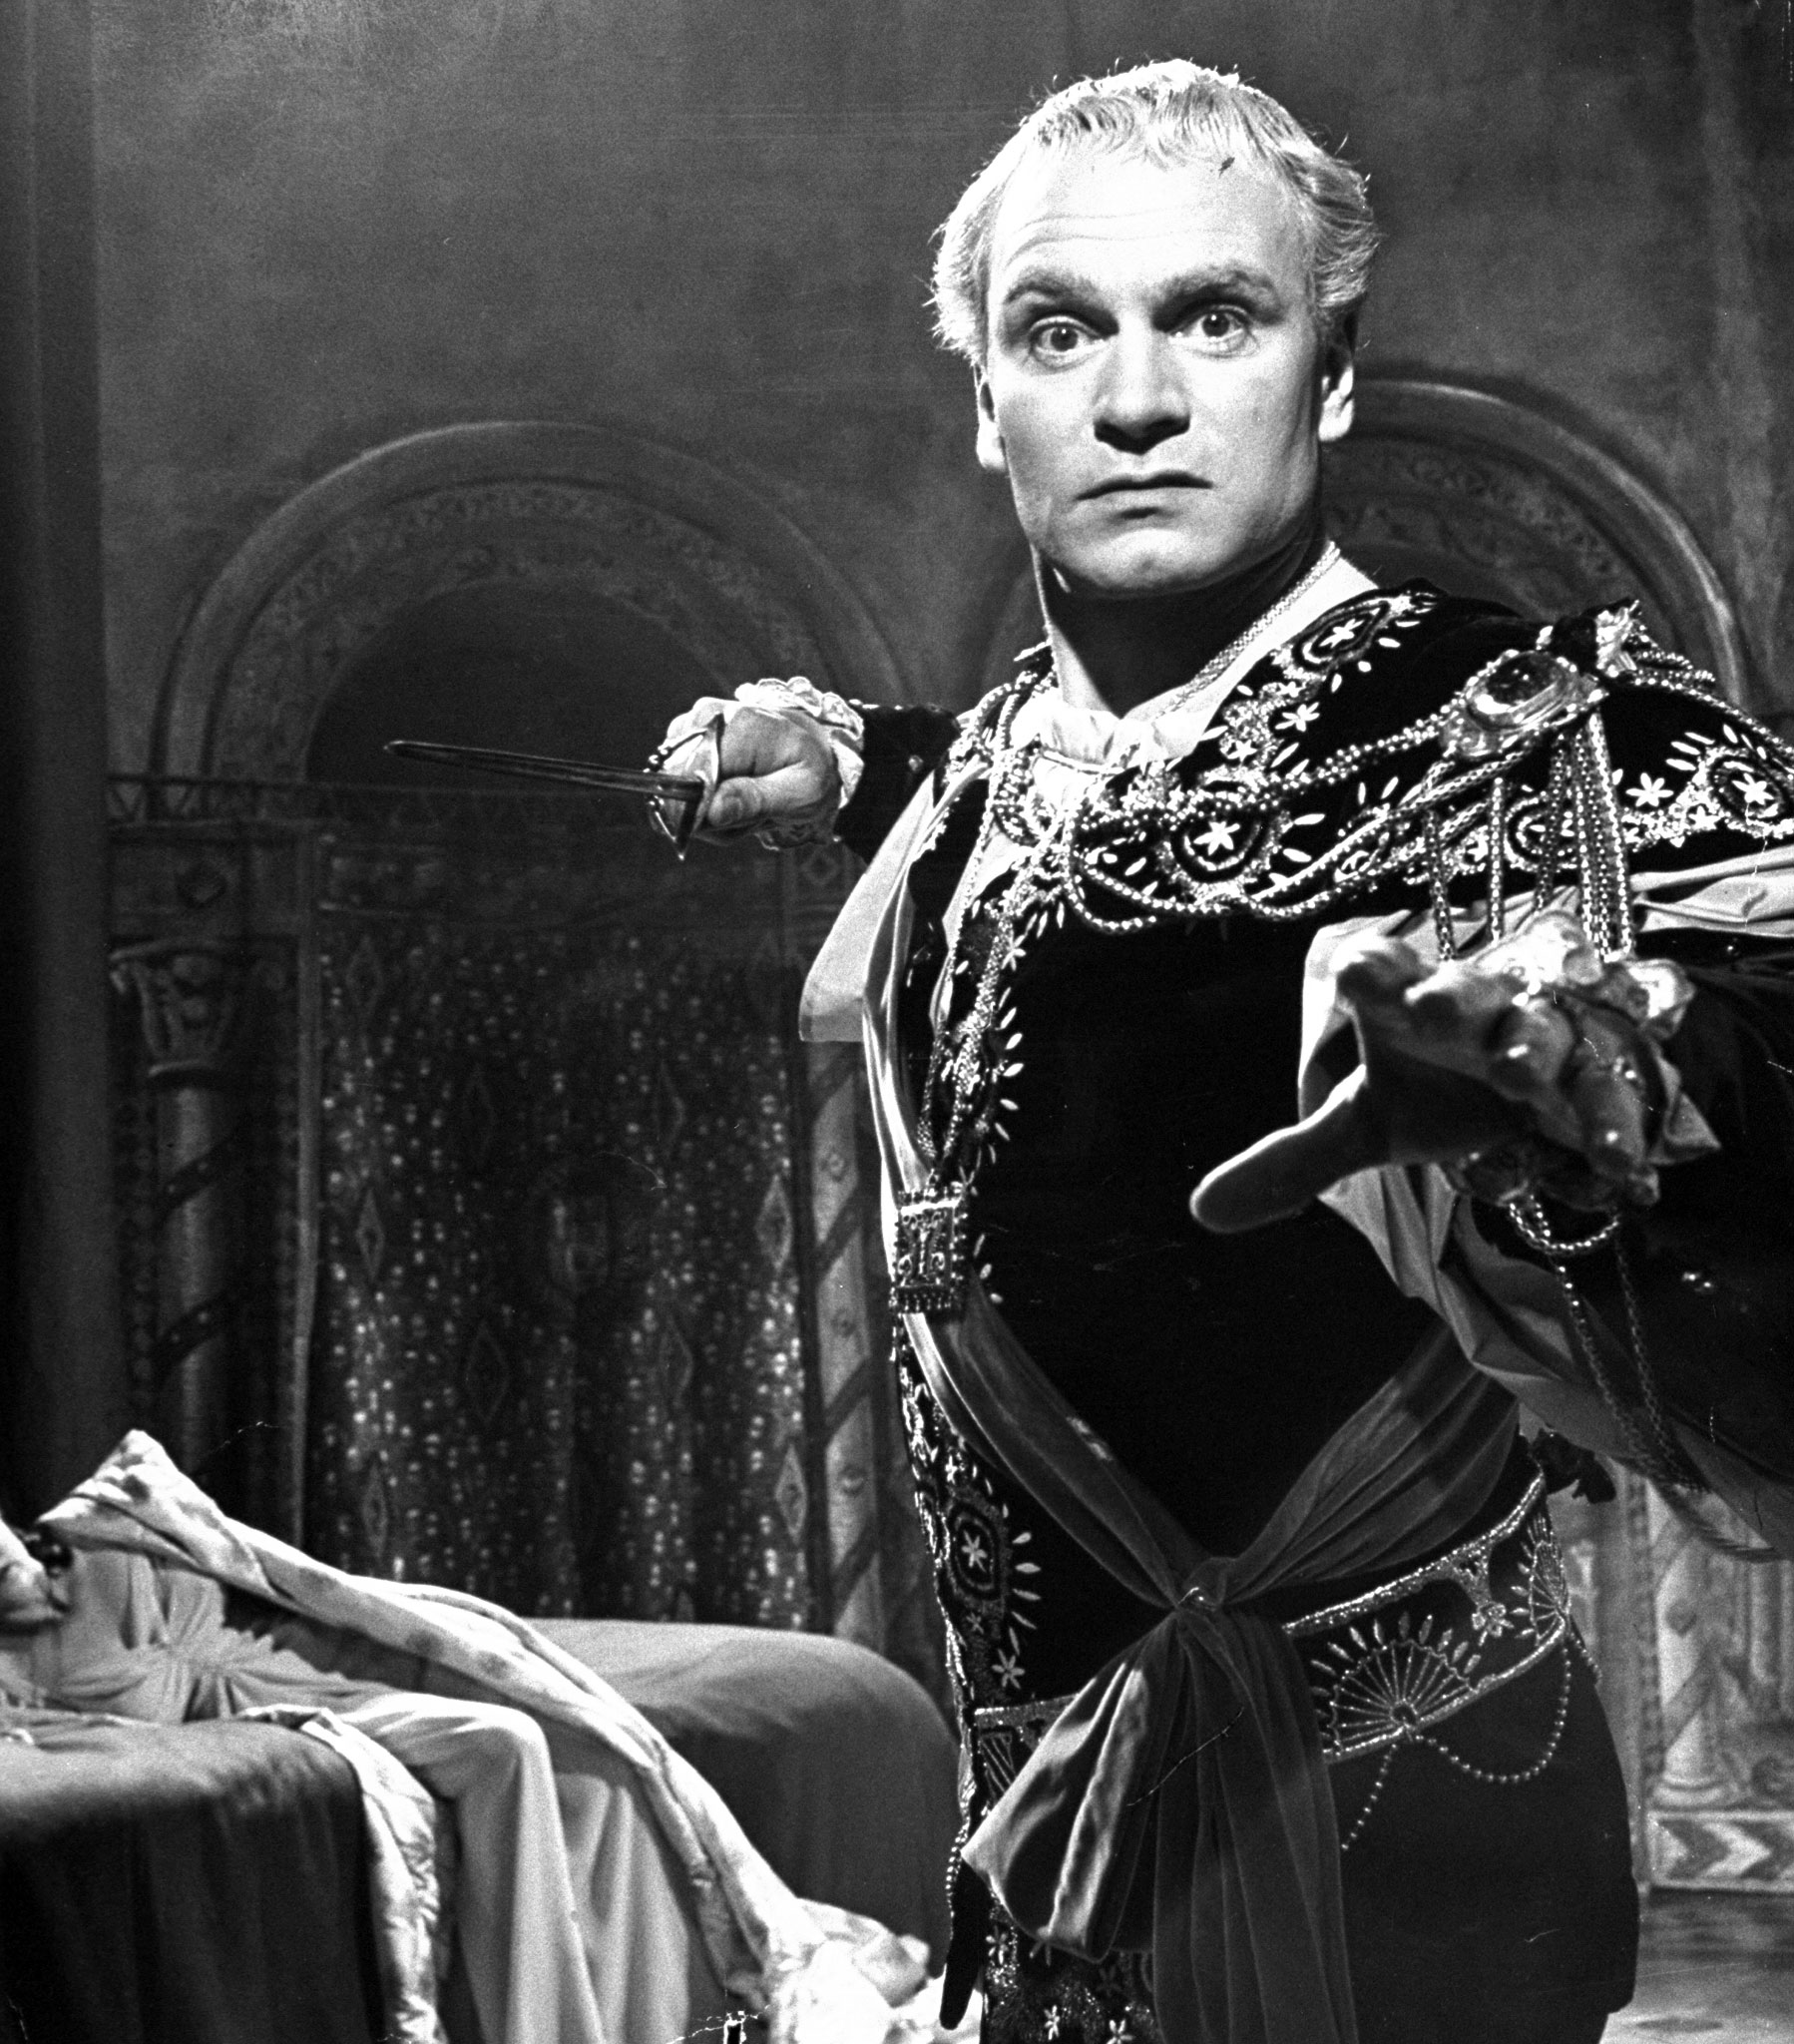 Sir Laurence Olivier as Hamlet, 1947